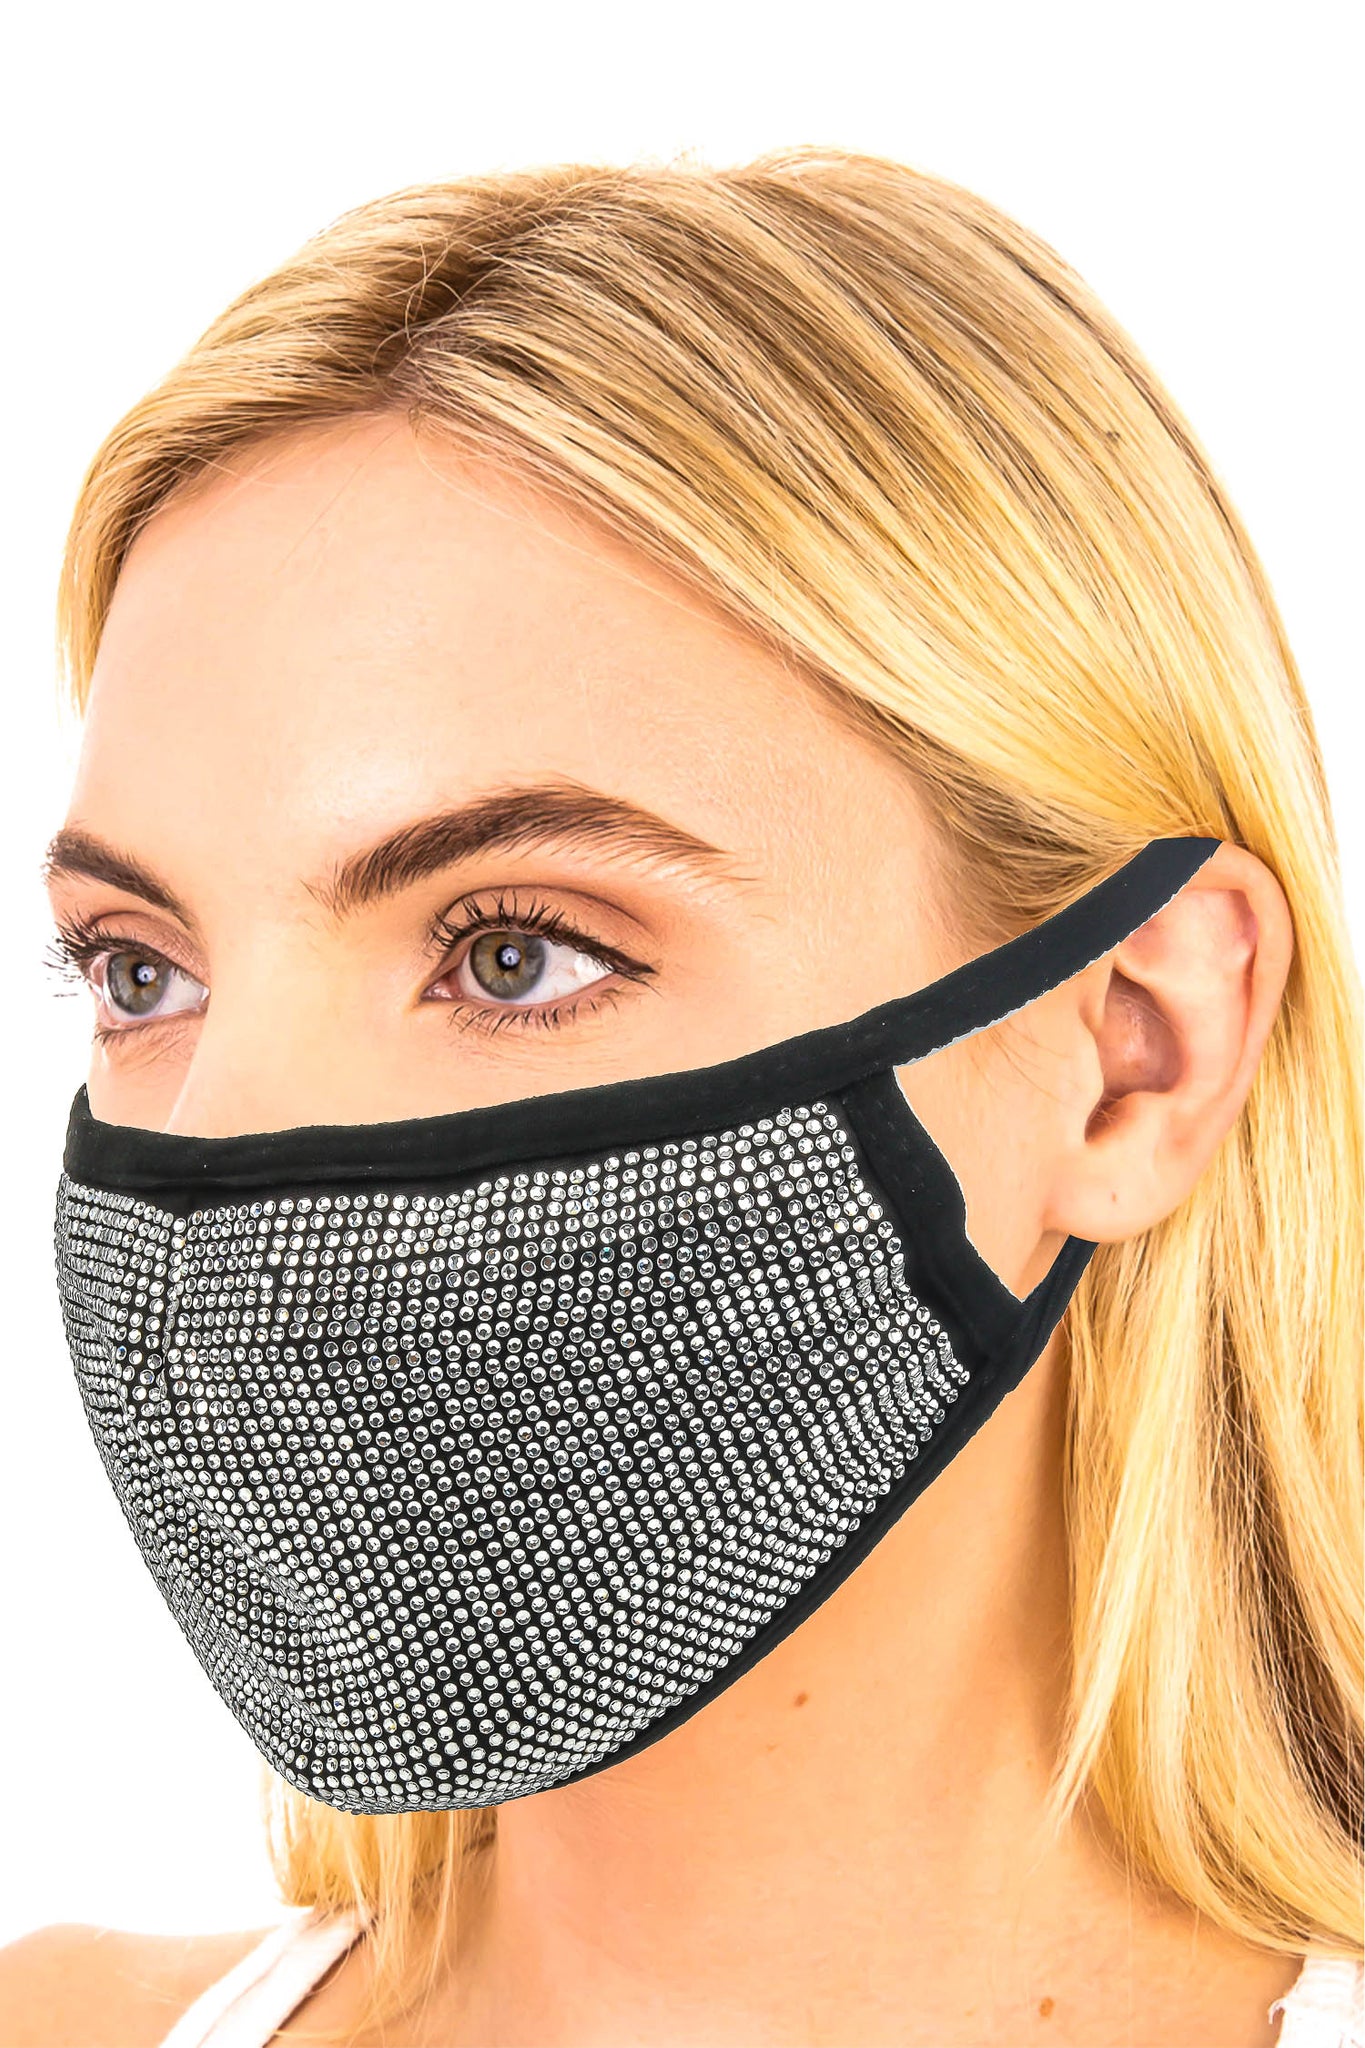 Rhinestone Studded Fashion Face Mask